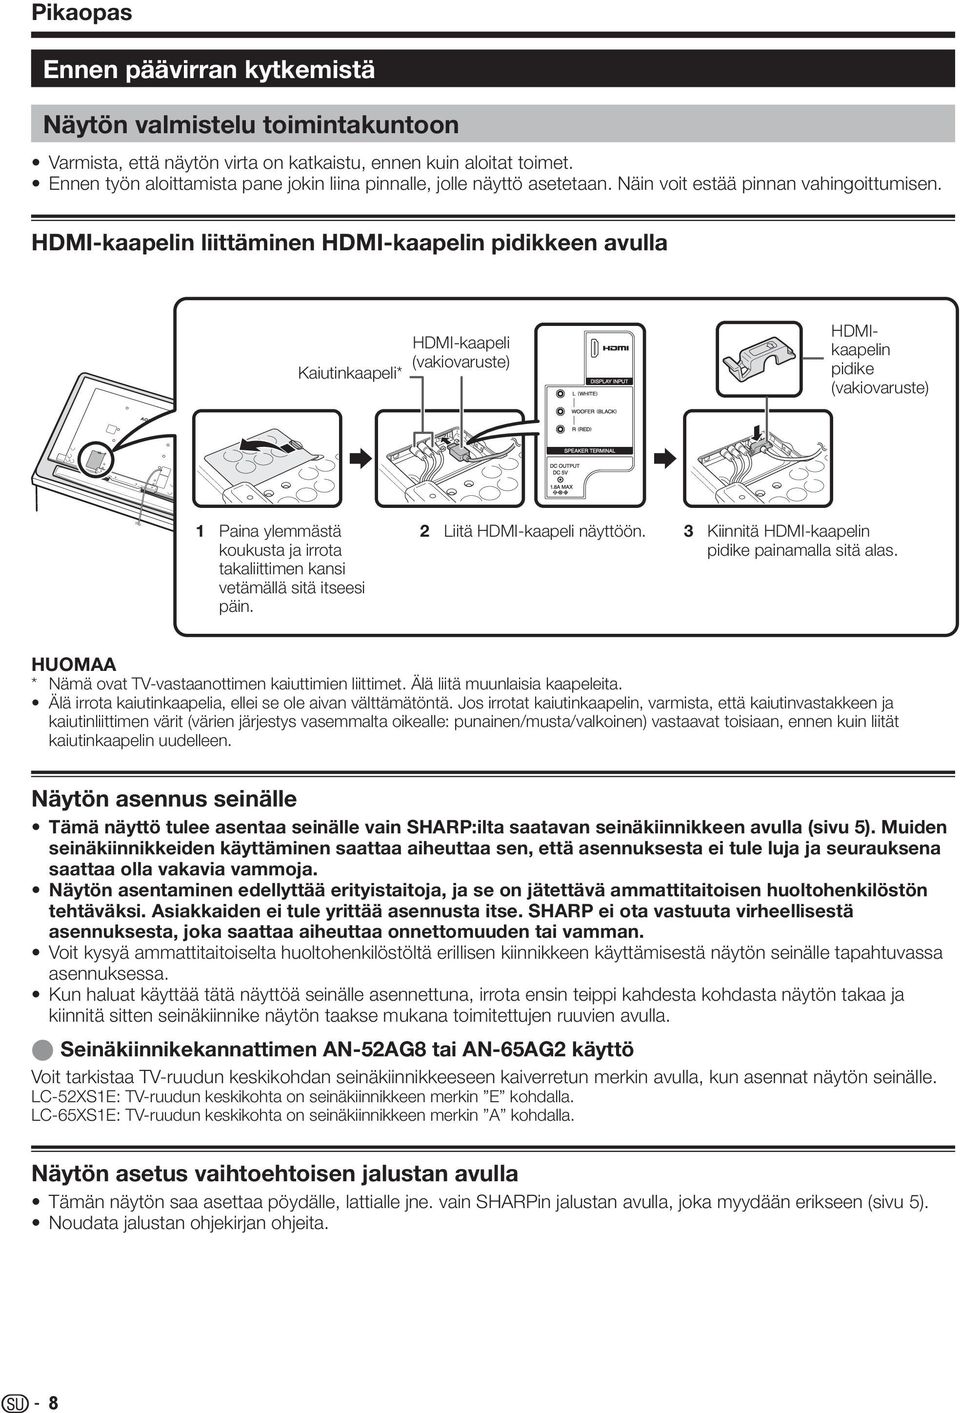 HDMI-kaapelin liittäminen HDMI-kaapelin pidikkeen avulla Kaiutinkaapeli* HDMI-kaapeli (vakiovaruste) HDMIkaapelin pidike (vakiovaruste) Paina ylemmästä koukusta ja irrota takaliittimen kansi